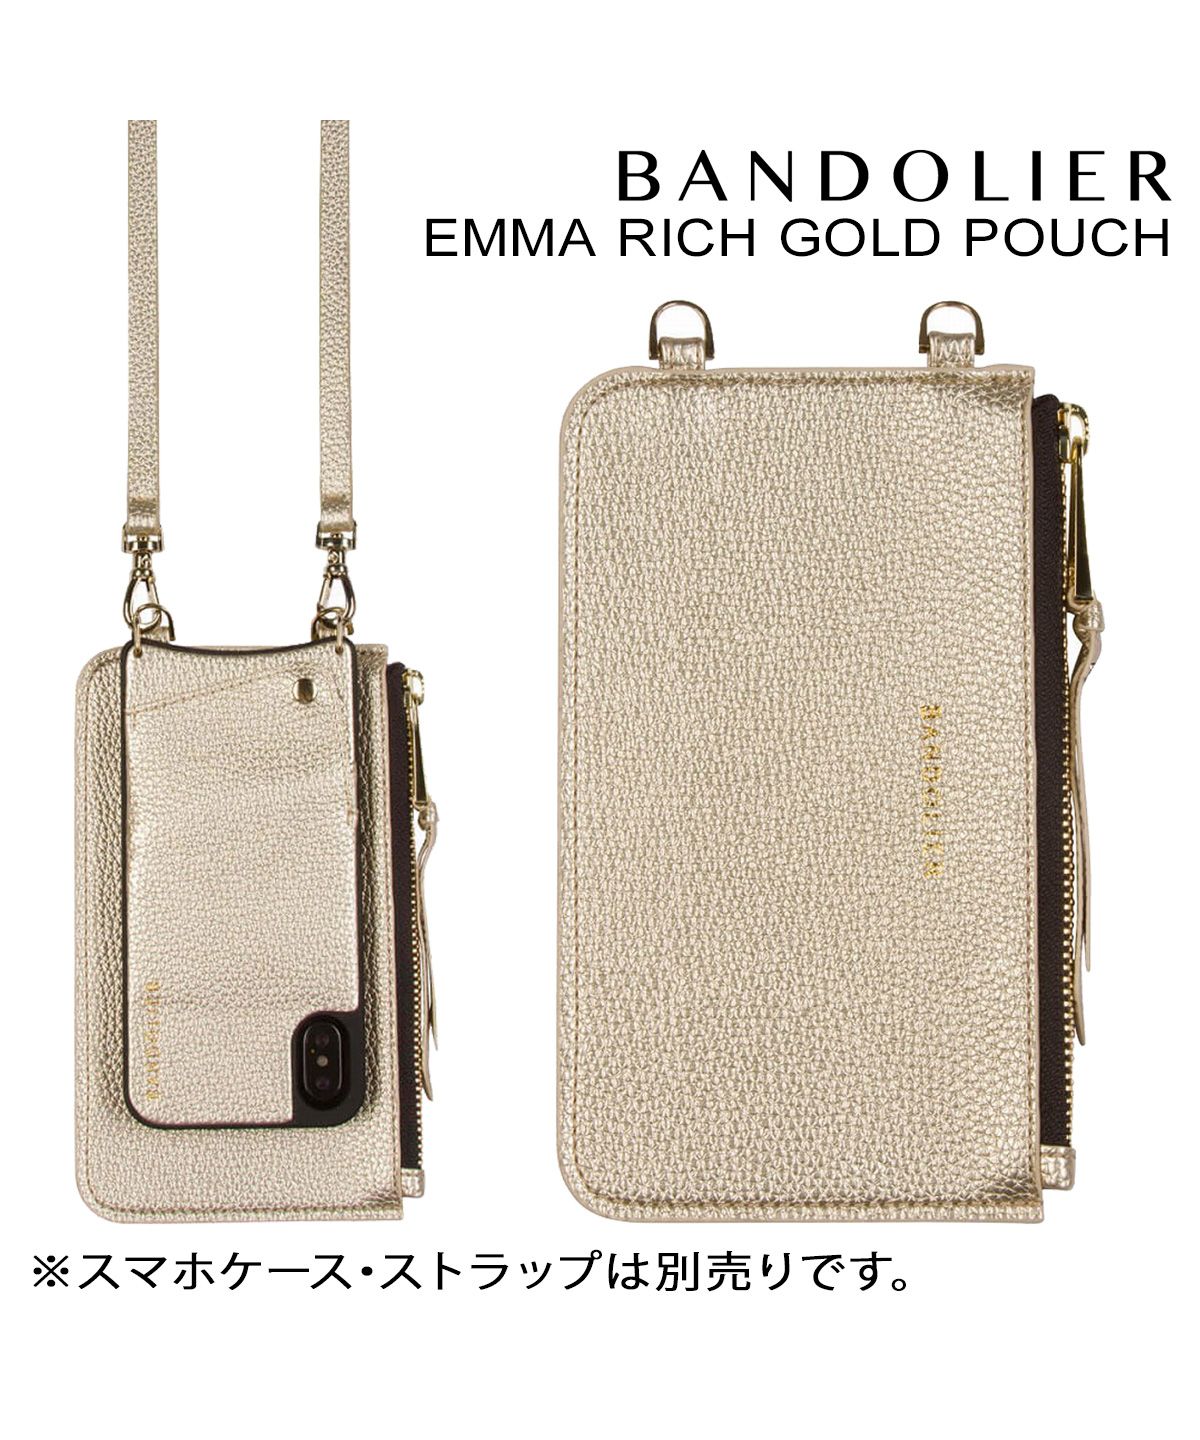 BANDOLIER(バンドリヤー) EMMA(エマ)ゴールド ポーチ - モバイルケース 